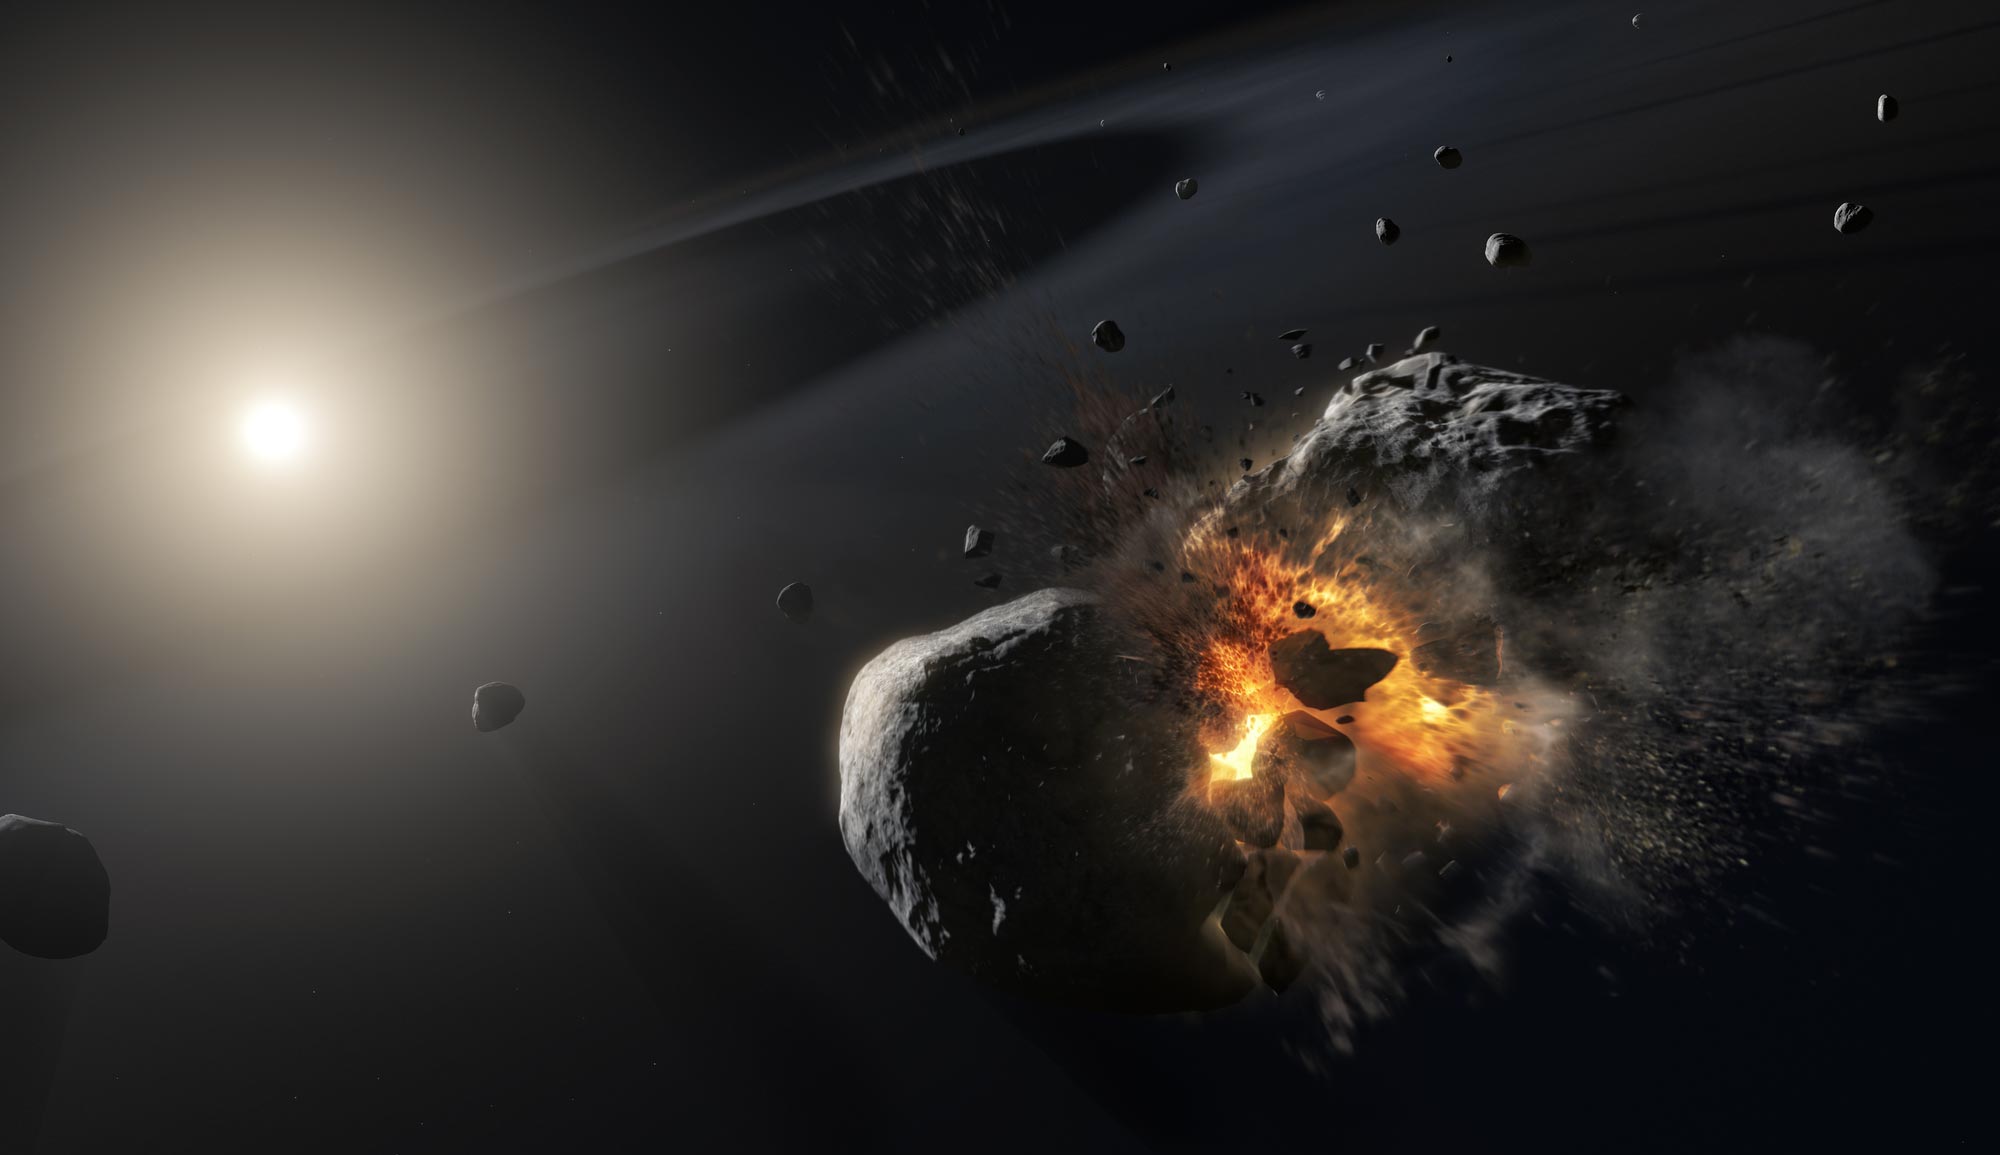 Webb menjelajahi sabuk asteroid Fomalhaut dan menemukan bukti adanya planet tersembunyi